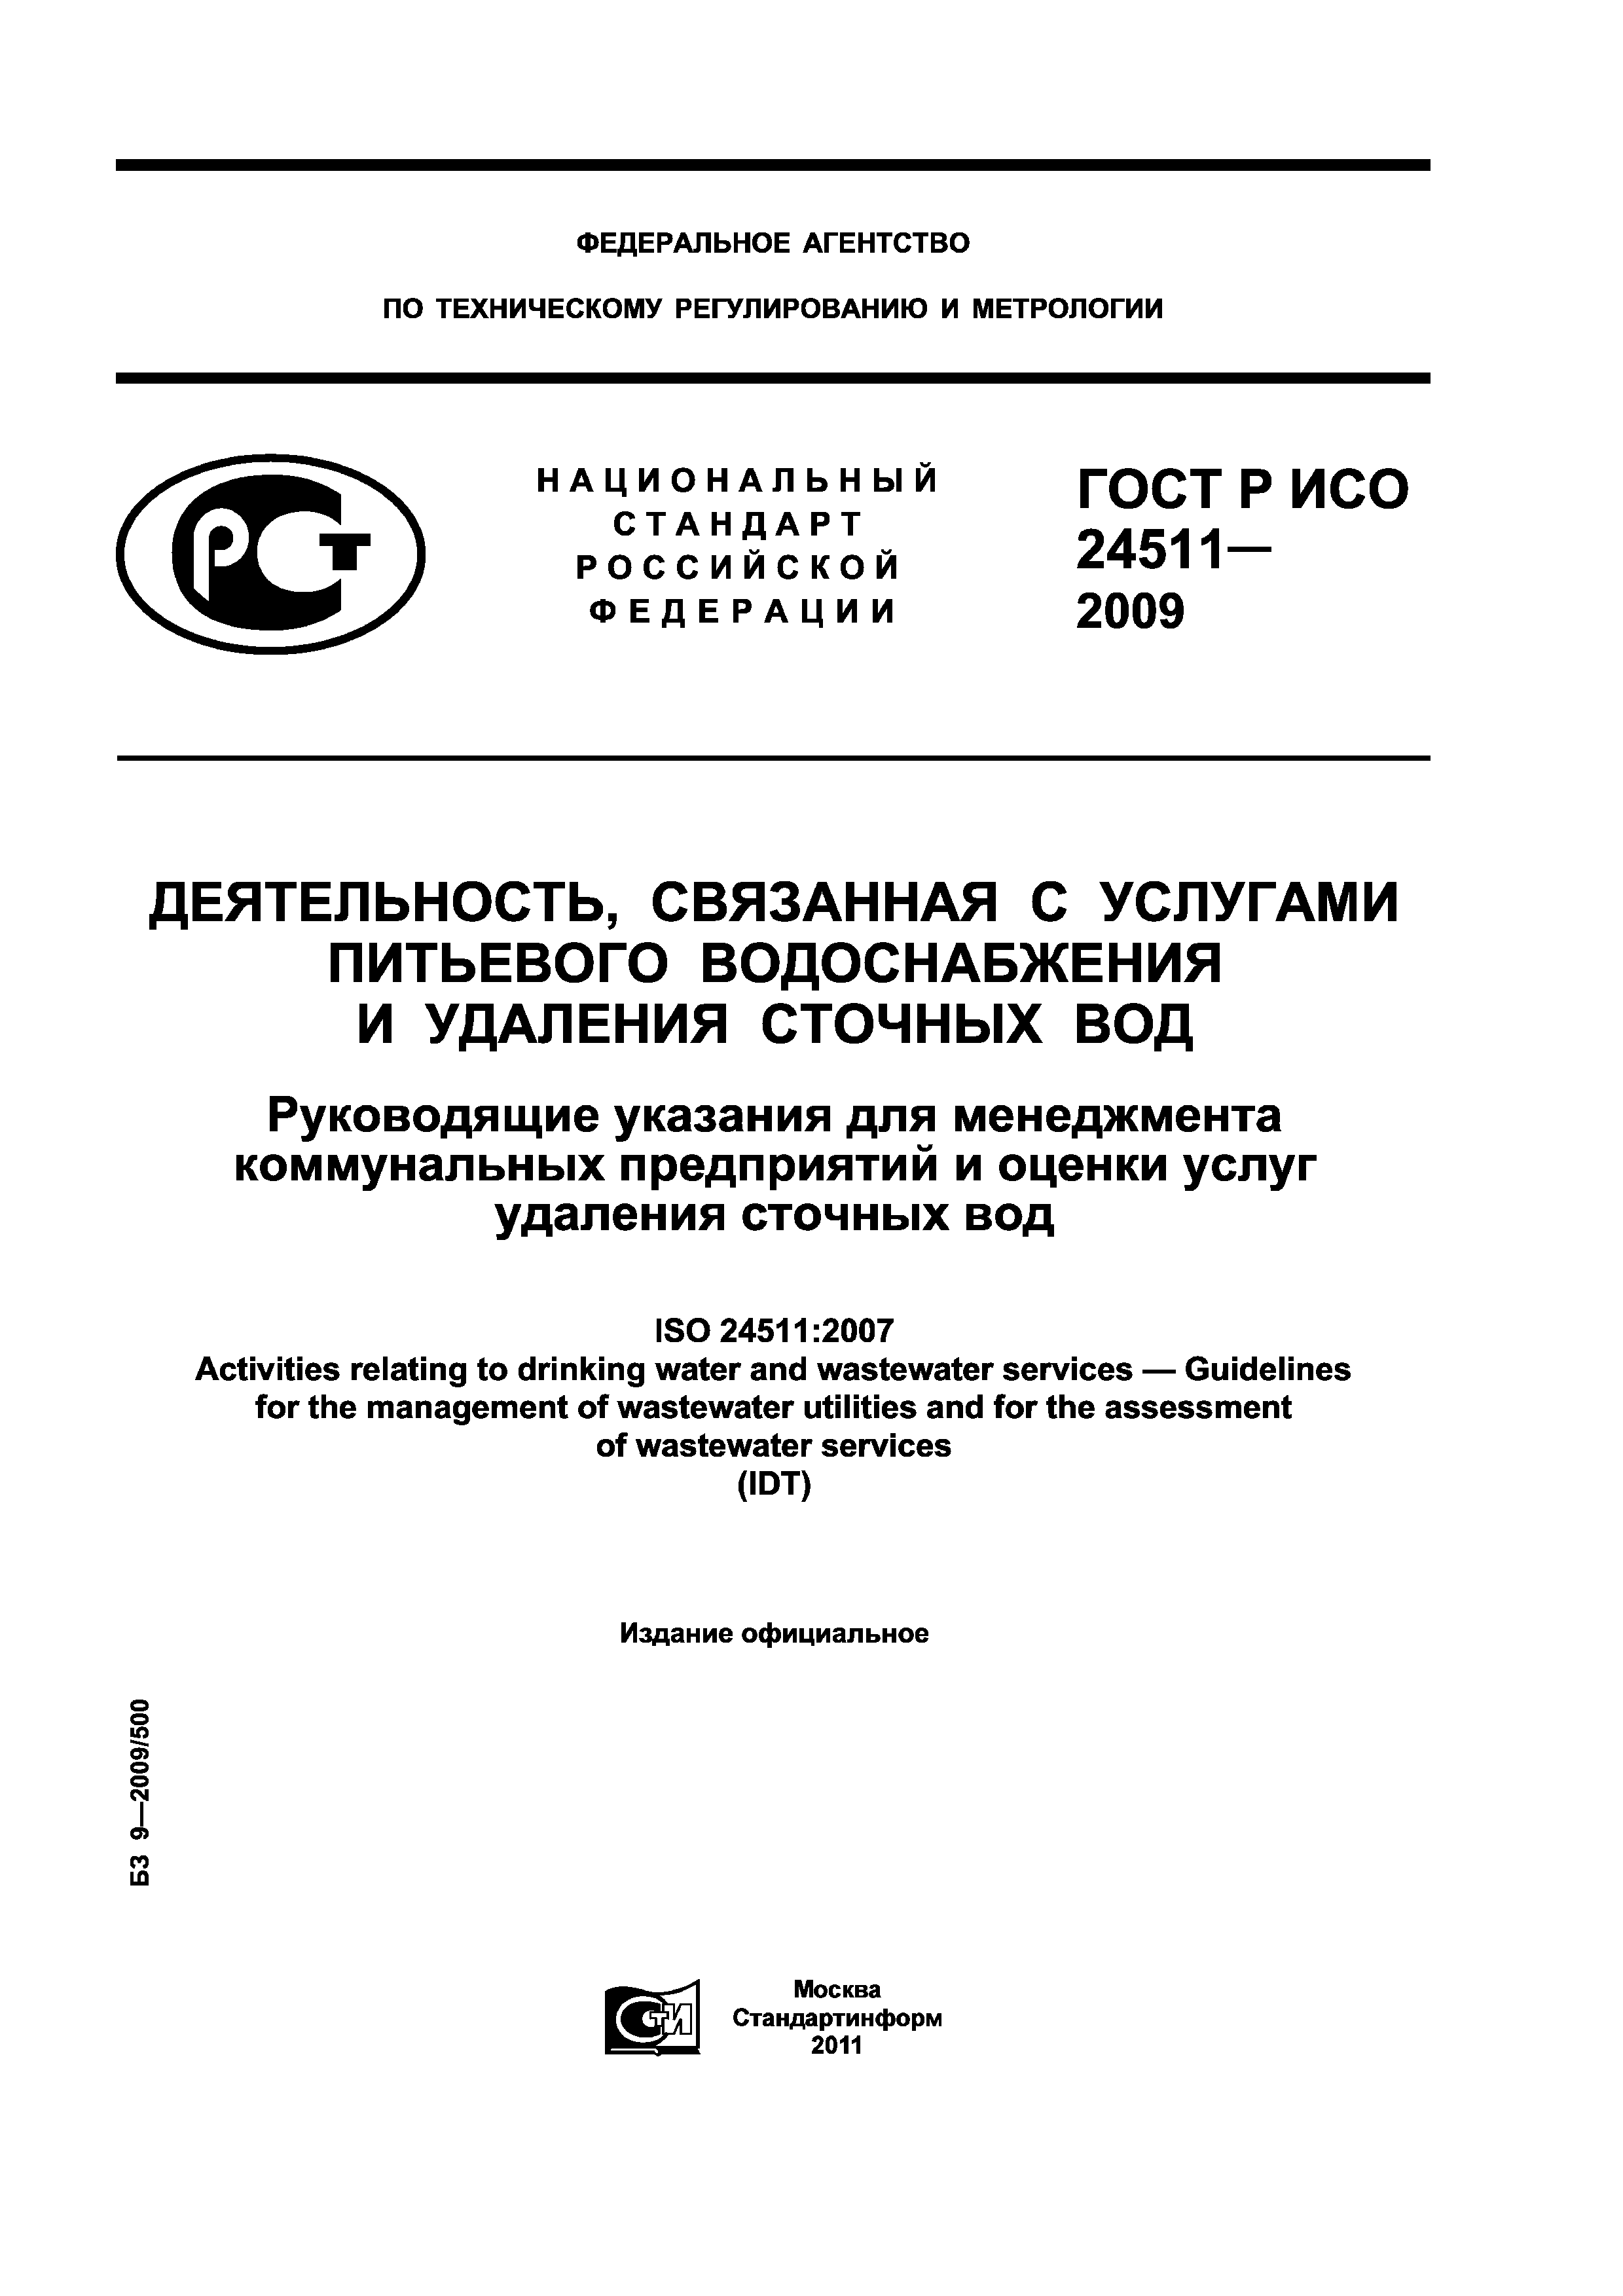 ГОСТ Р ИСО 24511-2009